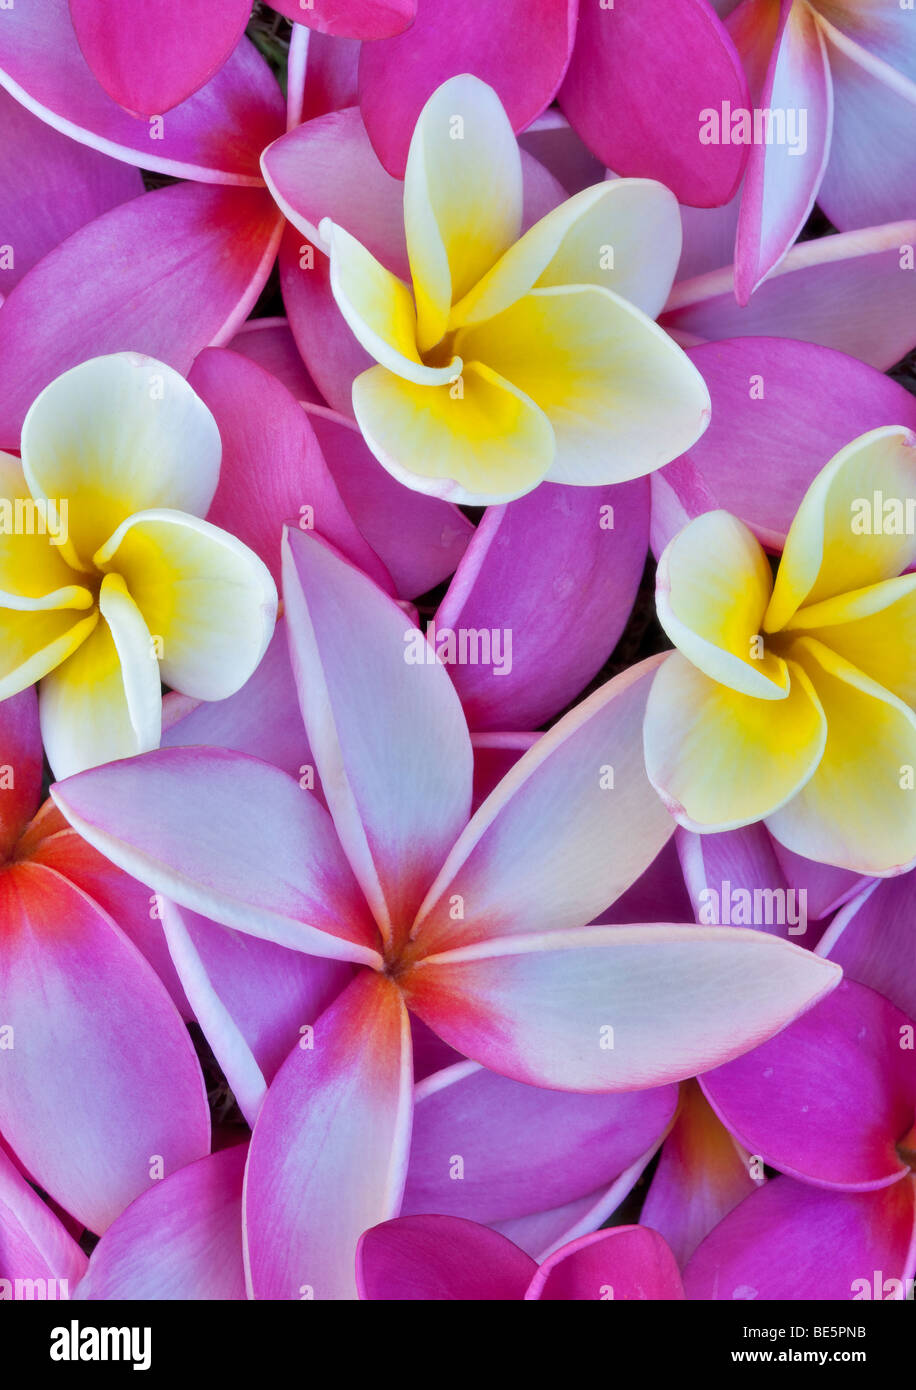 Red and yellow plumeria or frangipani. Kauai, Hawaii. Stock Photo